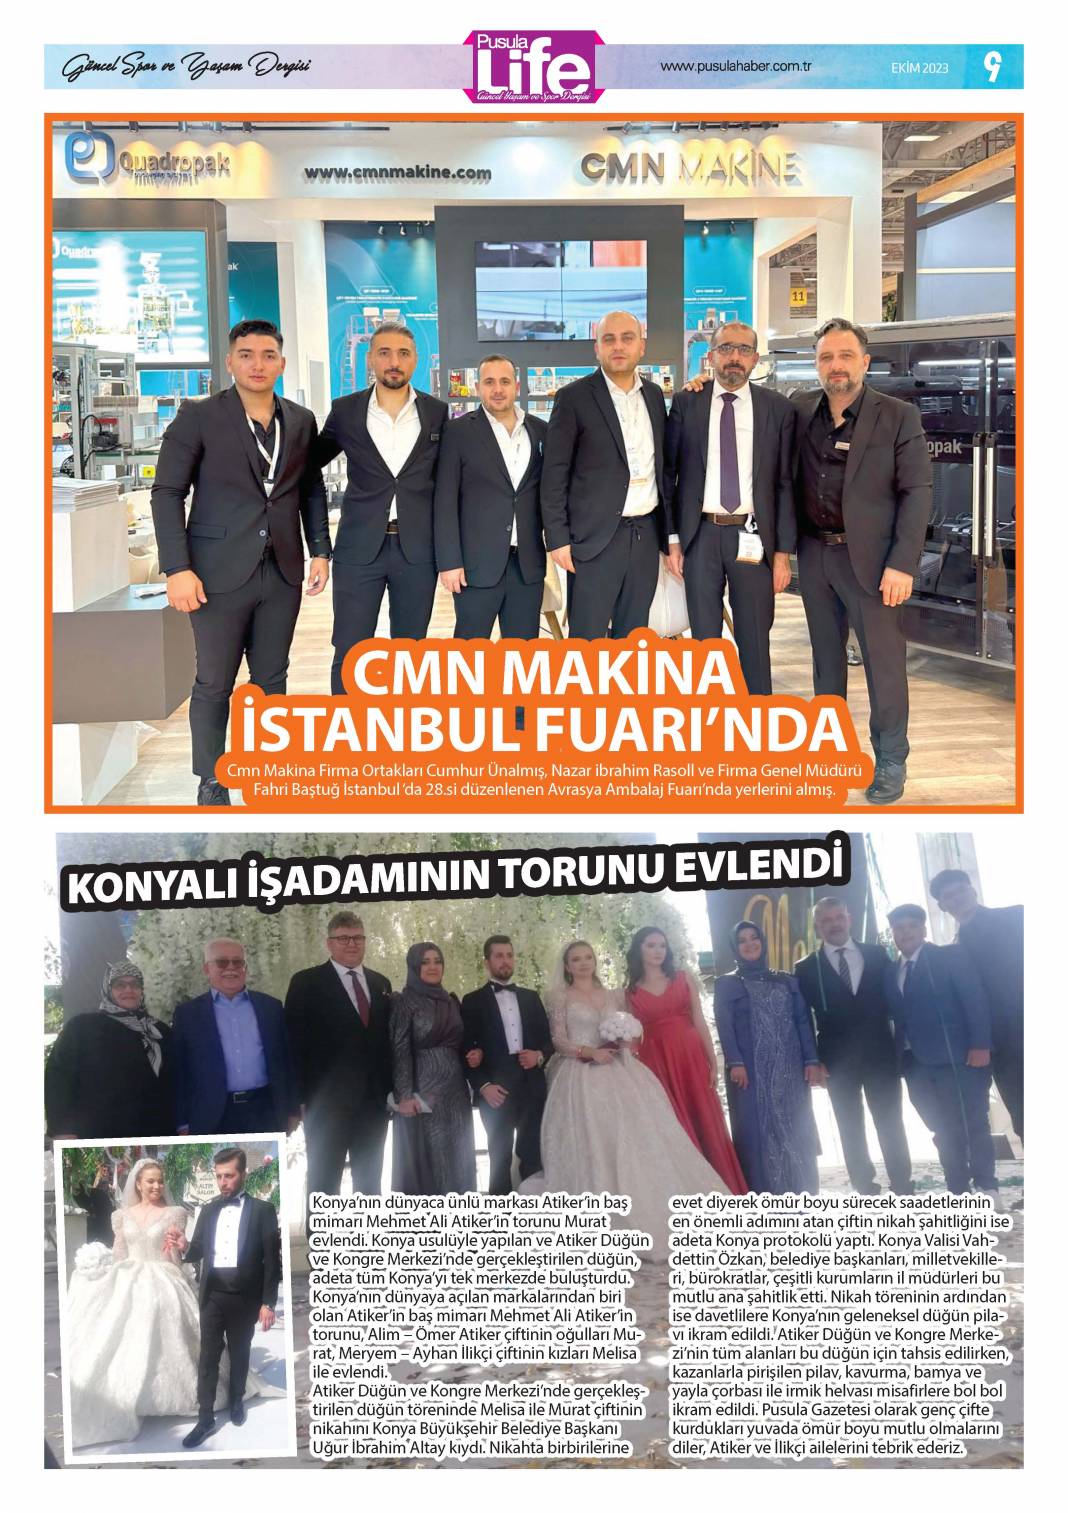 Konya'nın magazin dergisi PS Life'nin 320. sayısı yayınlandı 9